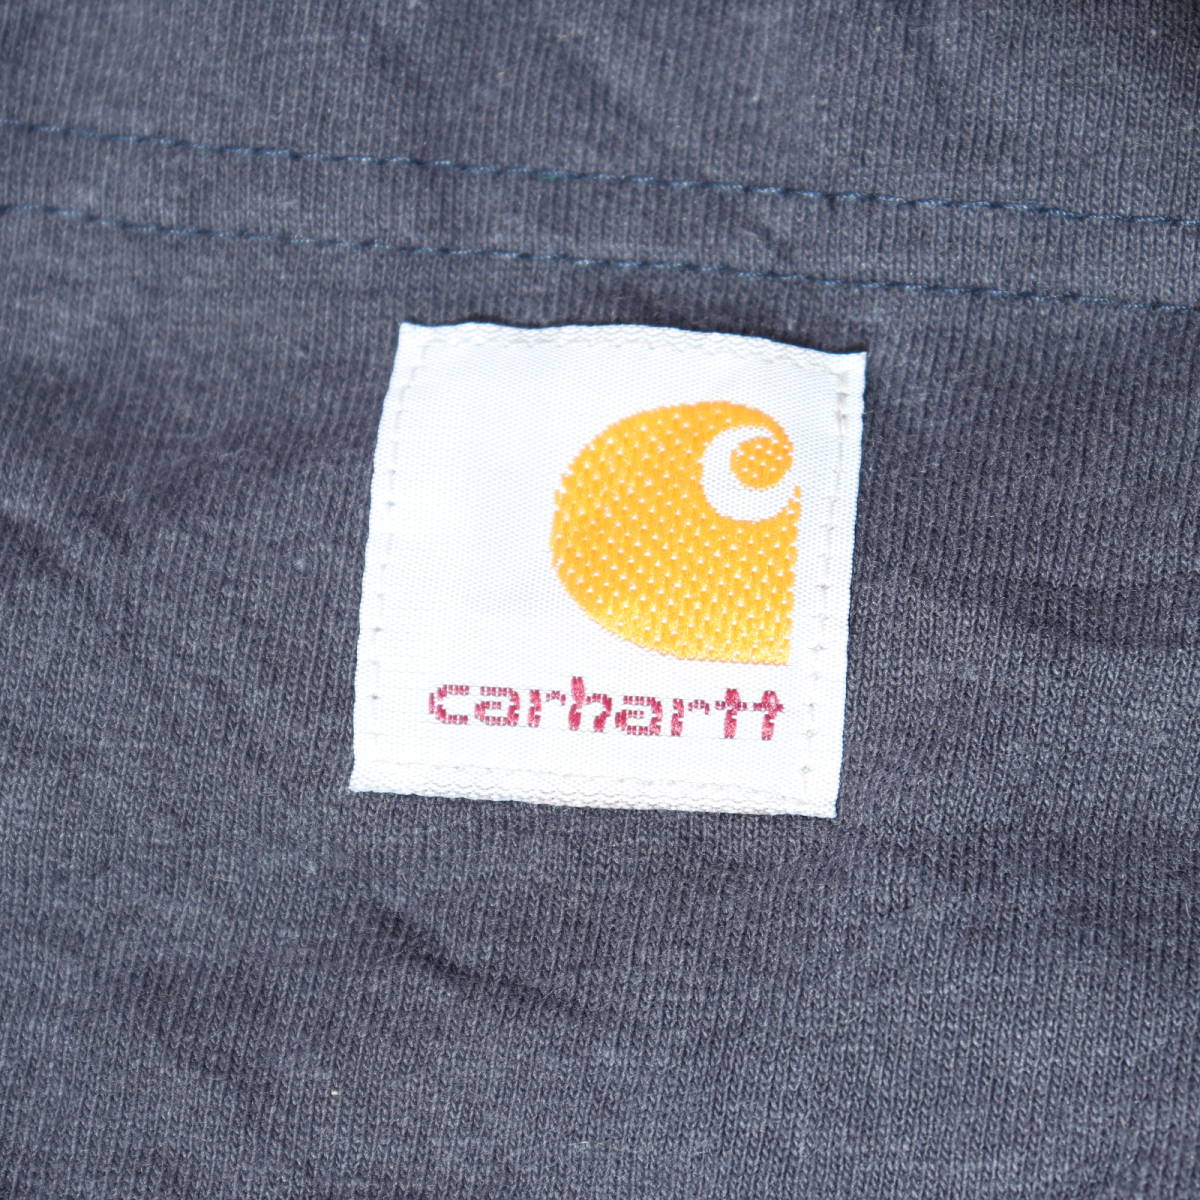 carhatt LOOSE FIT T-shirt L カーハート Tシャツ ネイビー 大きめポケットTシャツ Lサイズ 古着 中古_画像6